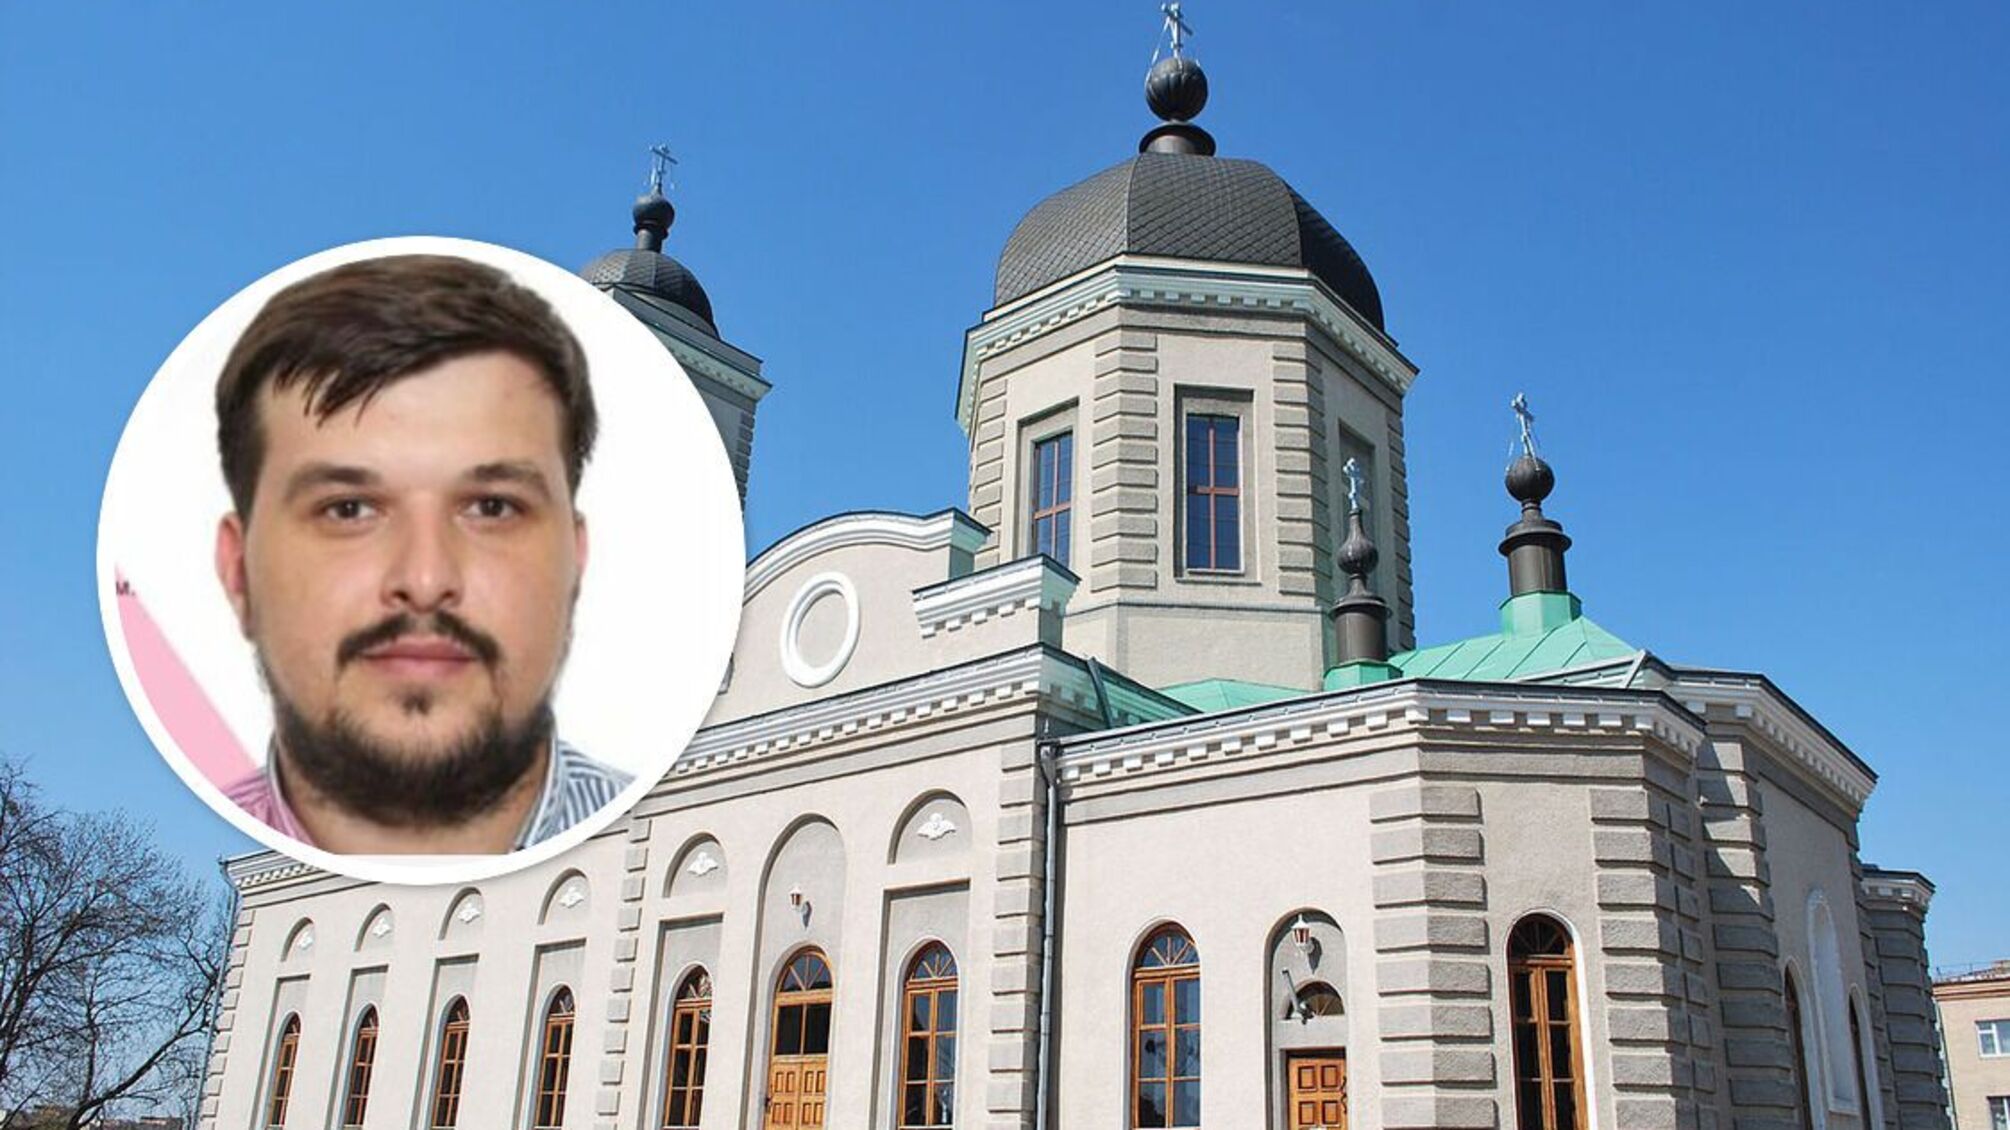 Хмельницкий: церковник УПЦ (МП) Слободян, избивший военного, объявлен в розыск - детали